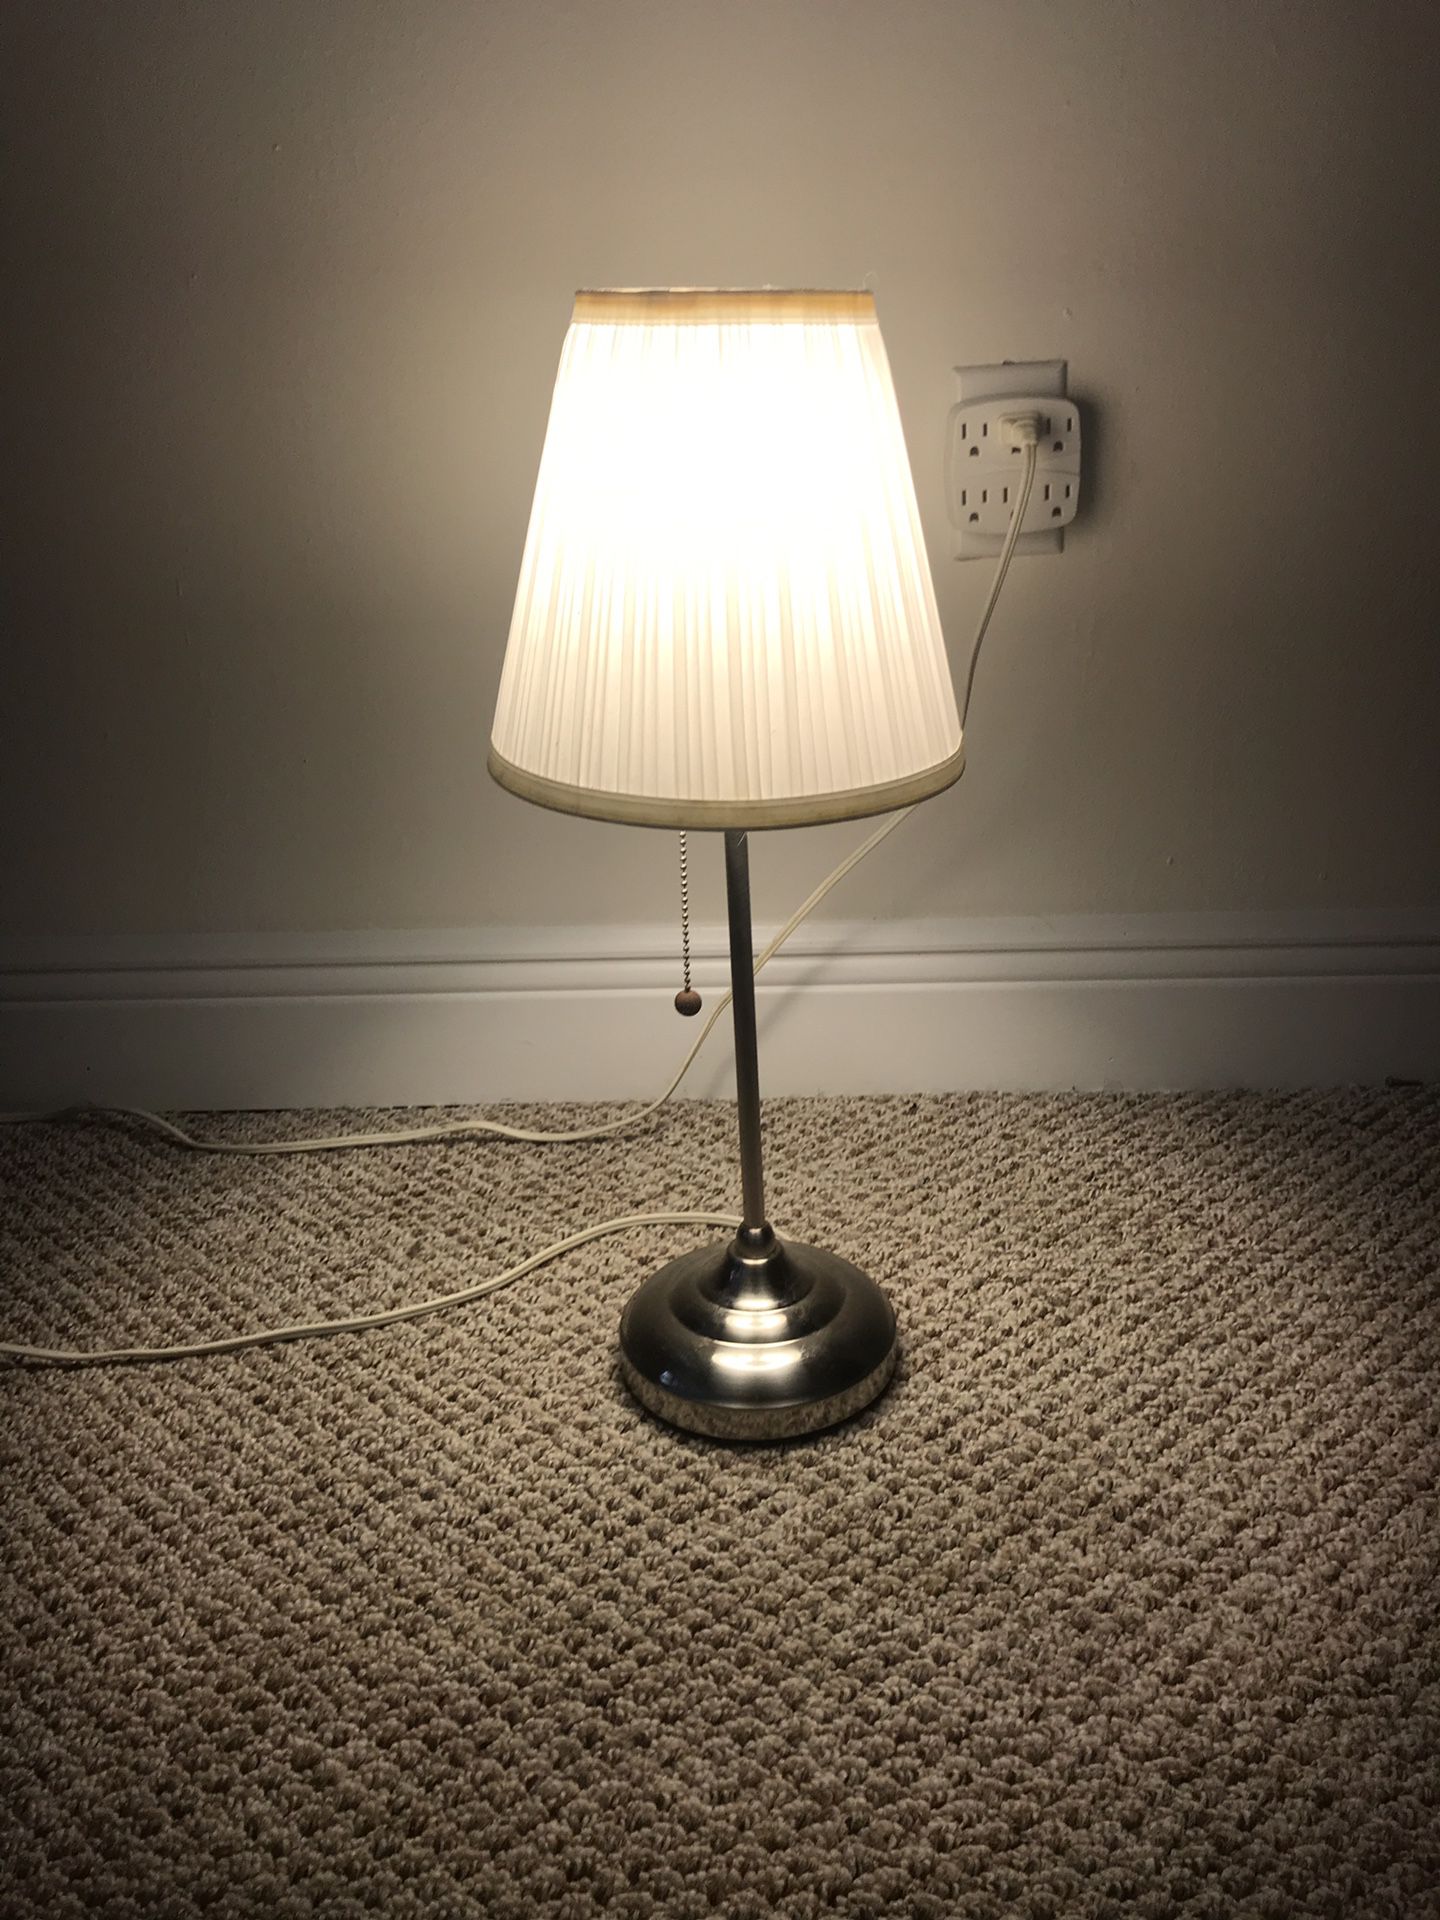 IKEA Lamp $5